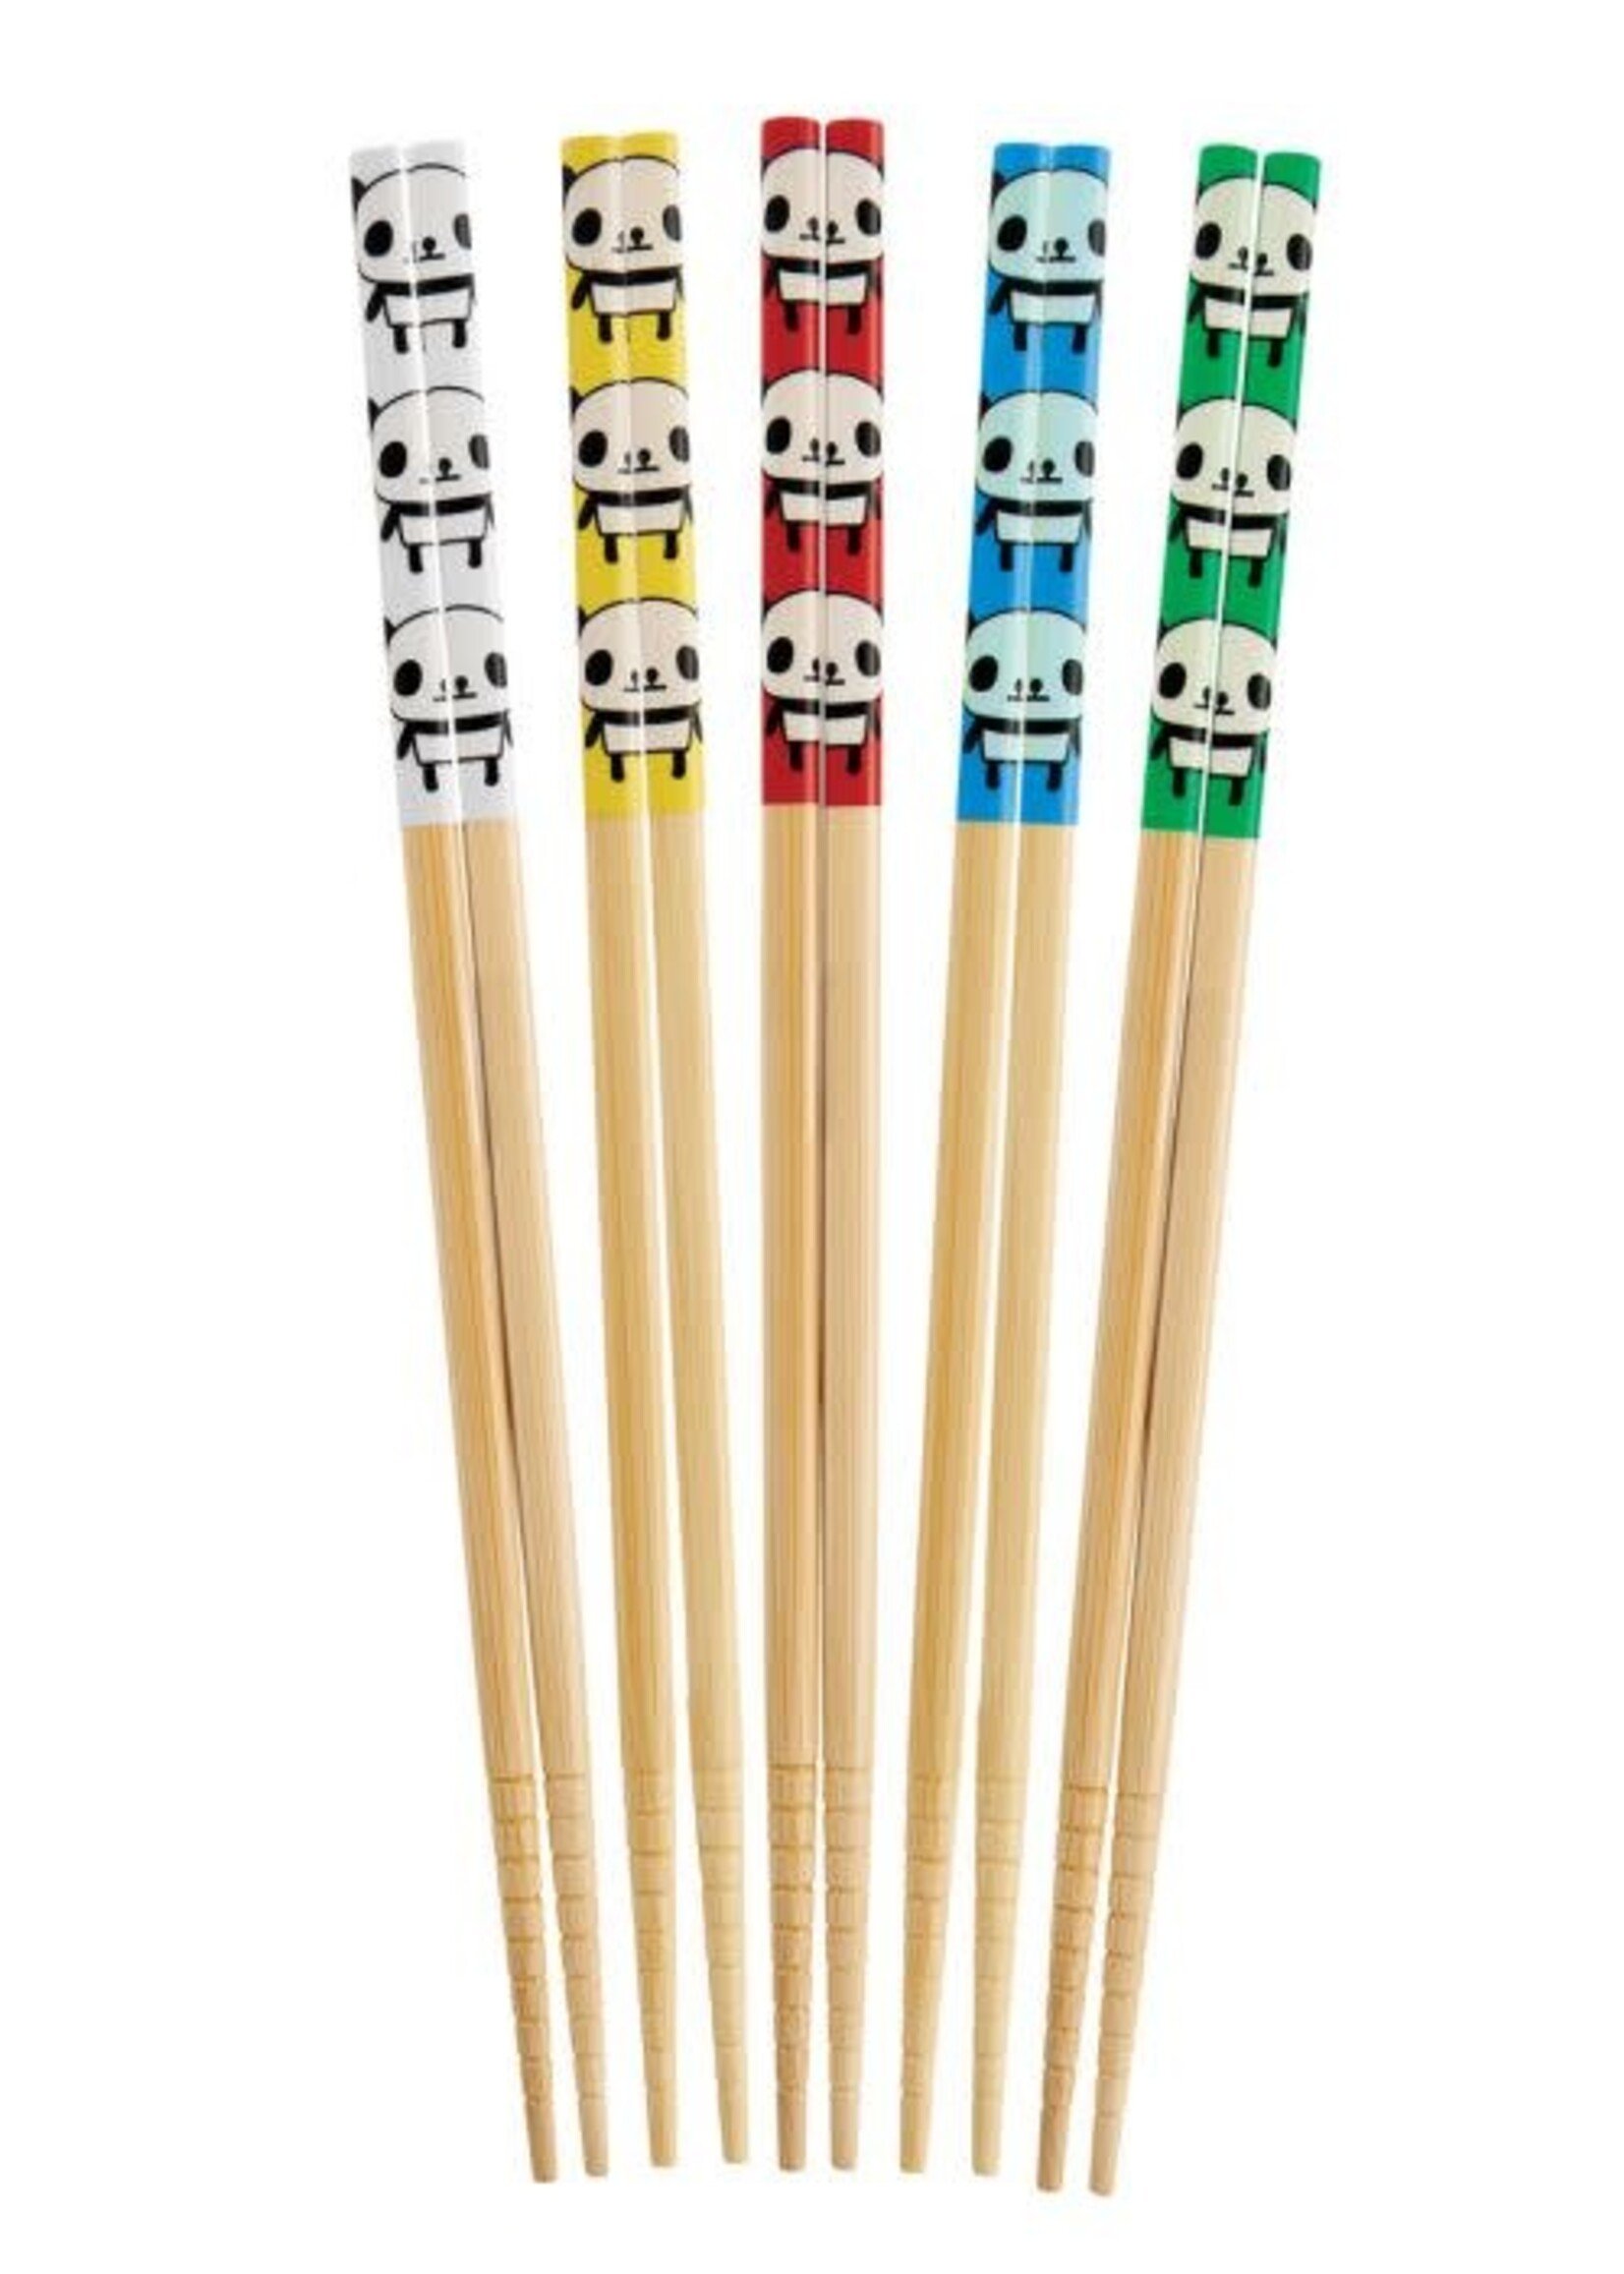 Helen's Asian Kitchen Panda Chopsticks - 5 pair